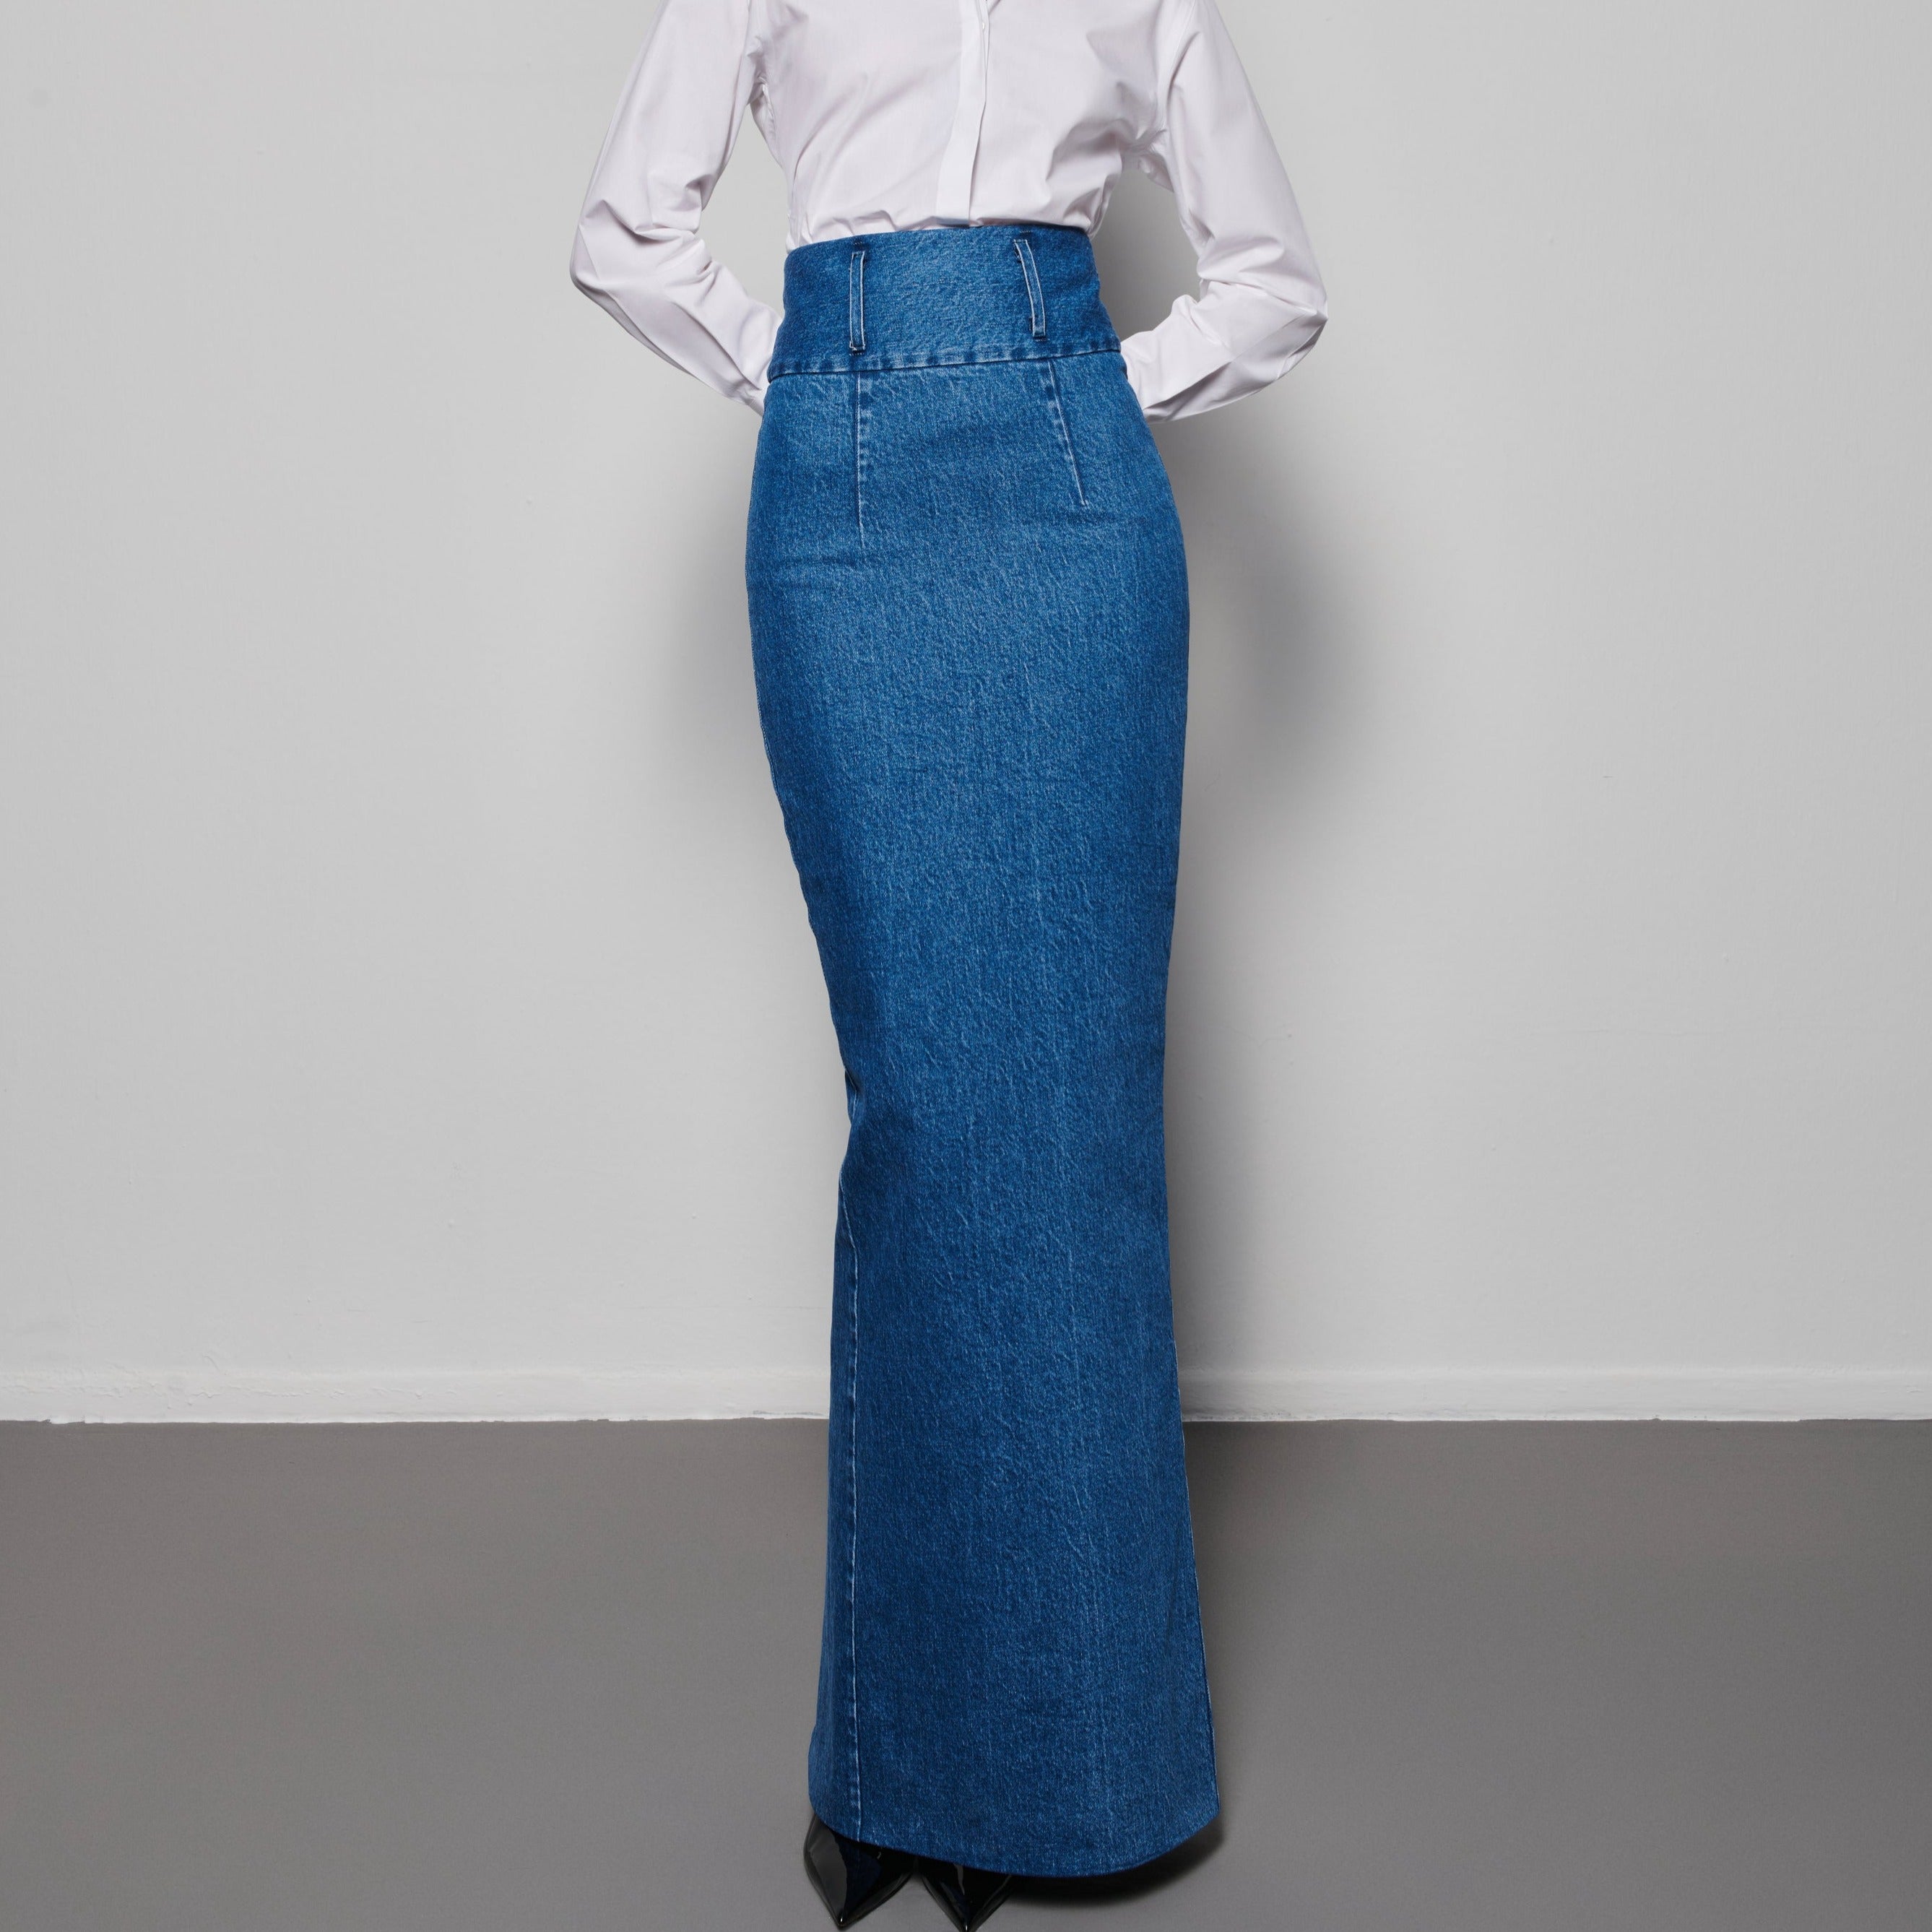 1970 Jeans Skirt
